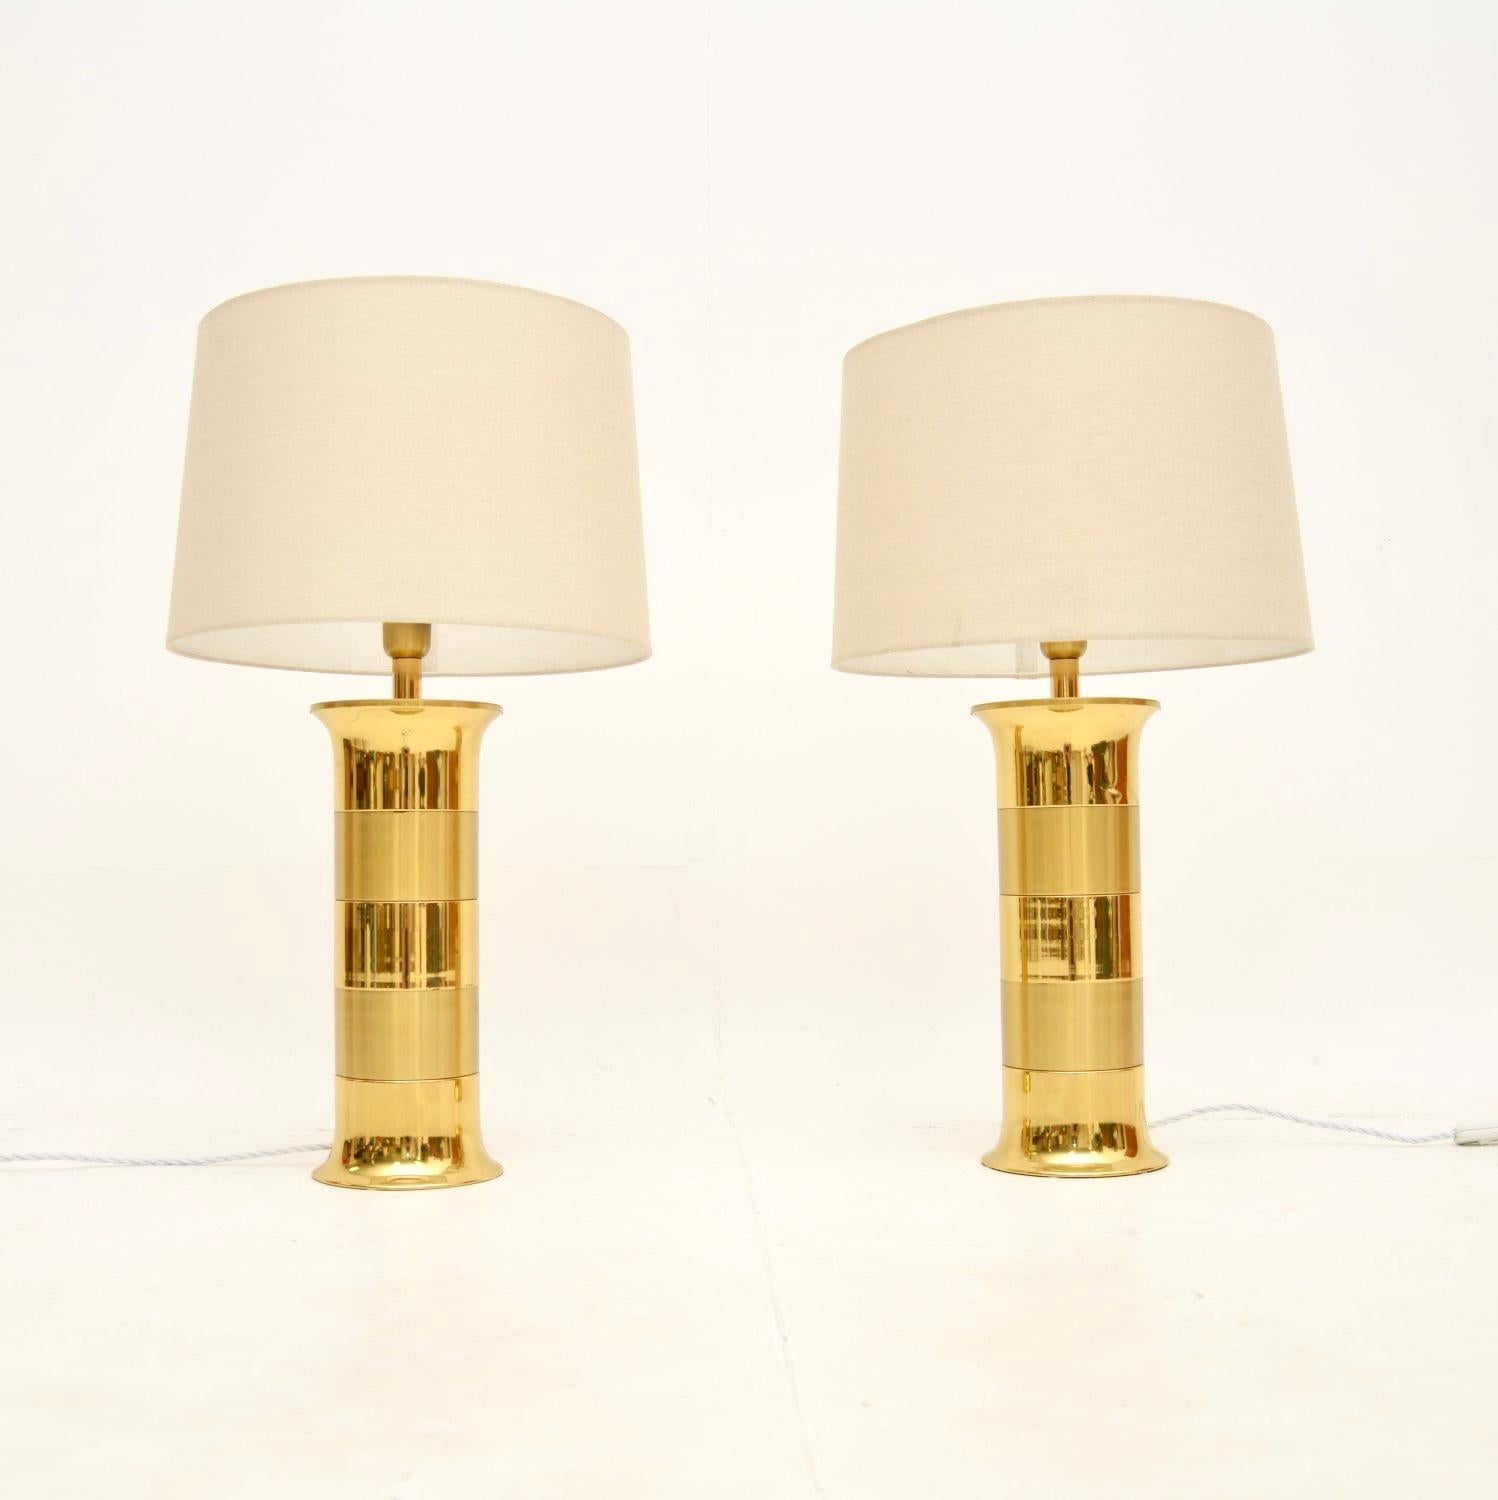 Ein atemberaubendes Paar großer Vintage-Tischlampen aus Messing, hergestellt in Frankreich und aus den 1970er Jahren.

Die Qualität ist hervorragend, sie sind schön gestaltet und haben eine fantastische Größe.

Der Zustand ist für ihr Alter